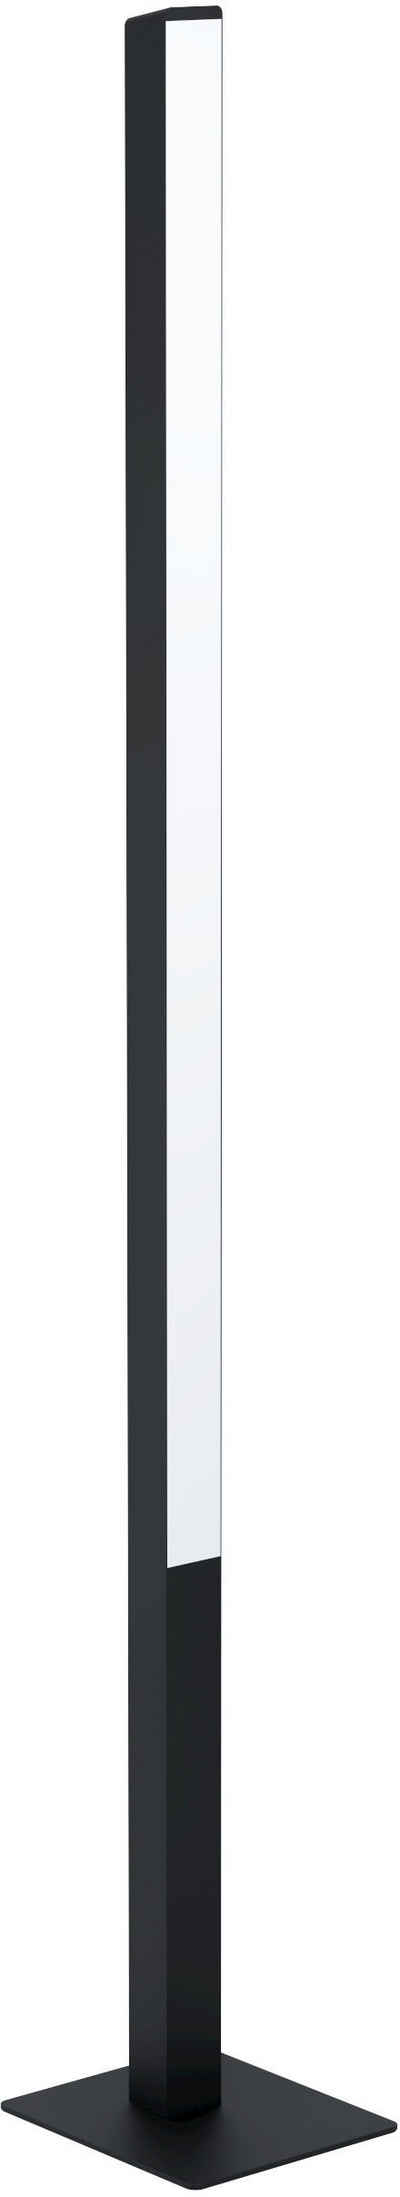 EGLO Stehlampe »SIMOLARIS-Z«, Stehleuchte in schwarz aus Alu, Stahl - 35W - warmweiß - kaltweiß